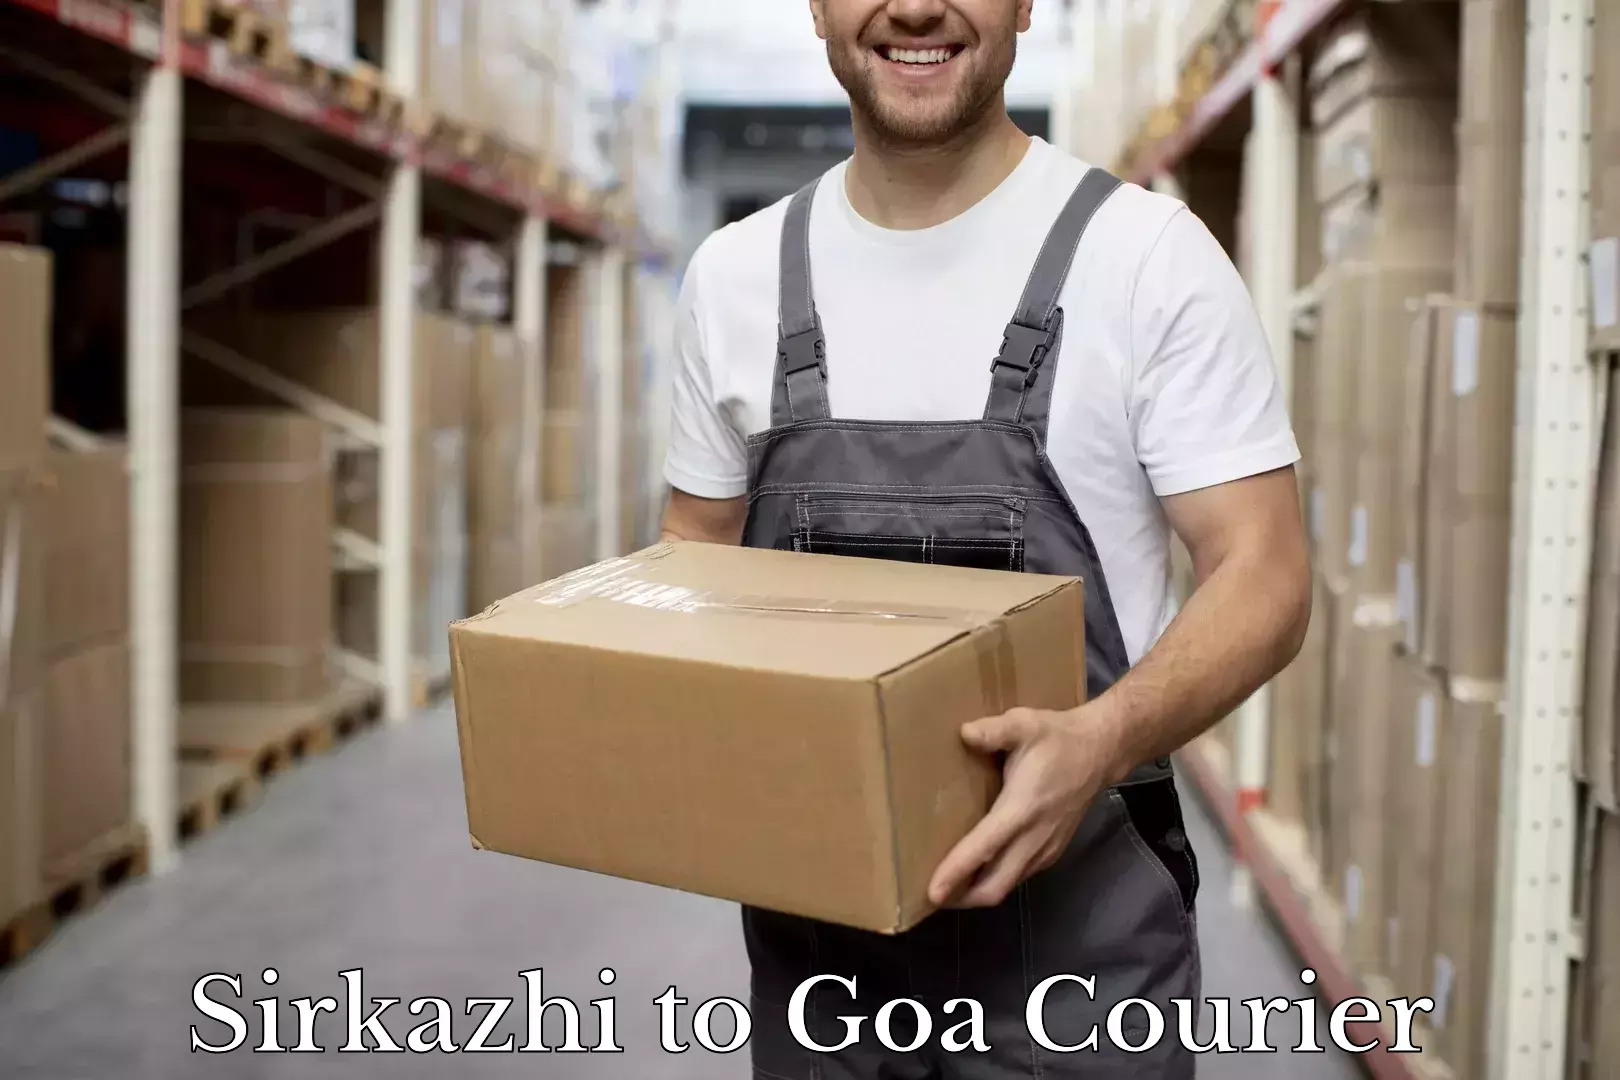 Luggage shipment tracking Sirkazhi to Goa